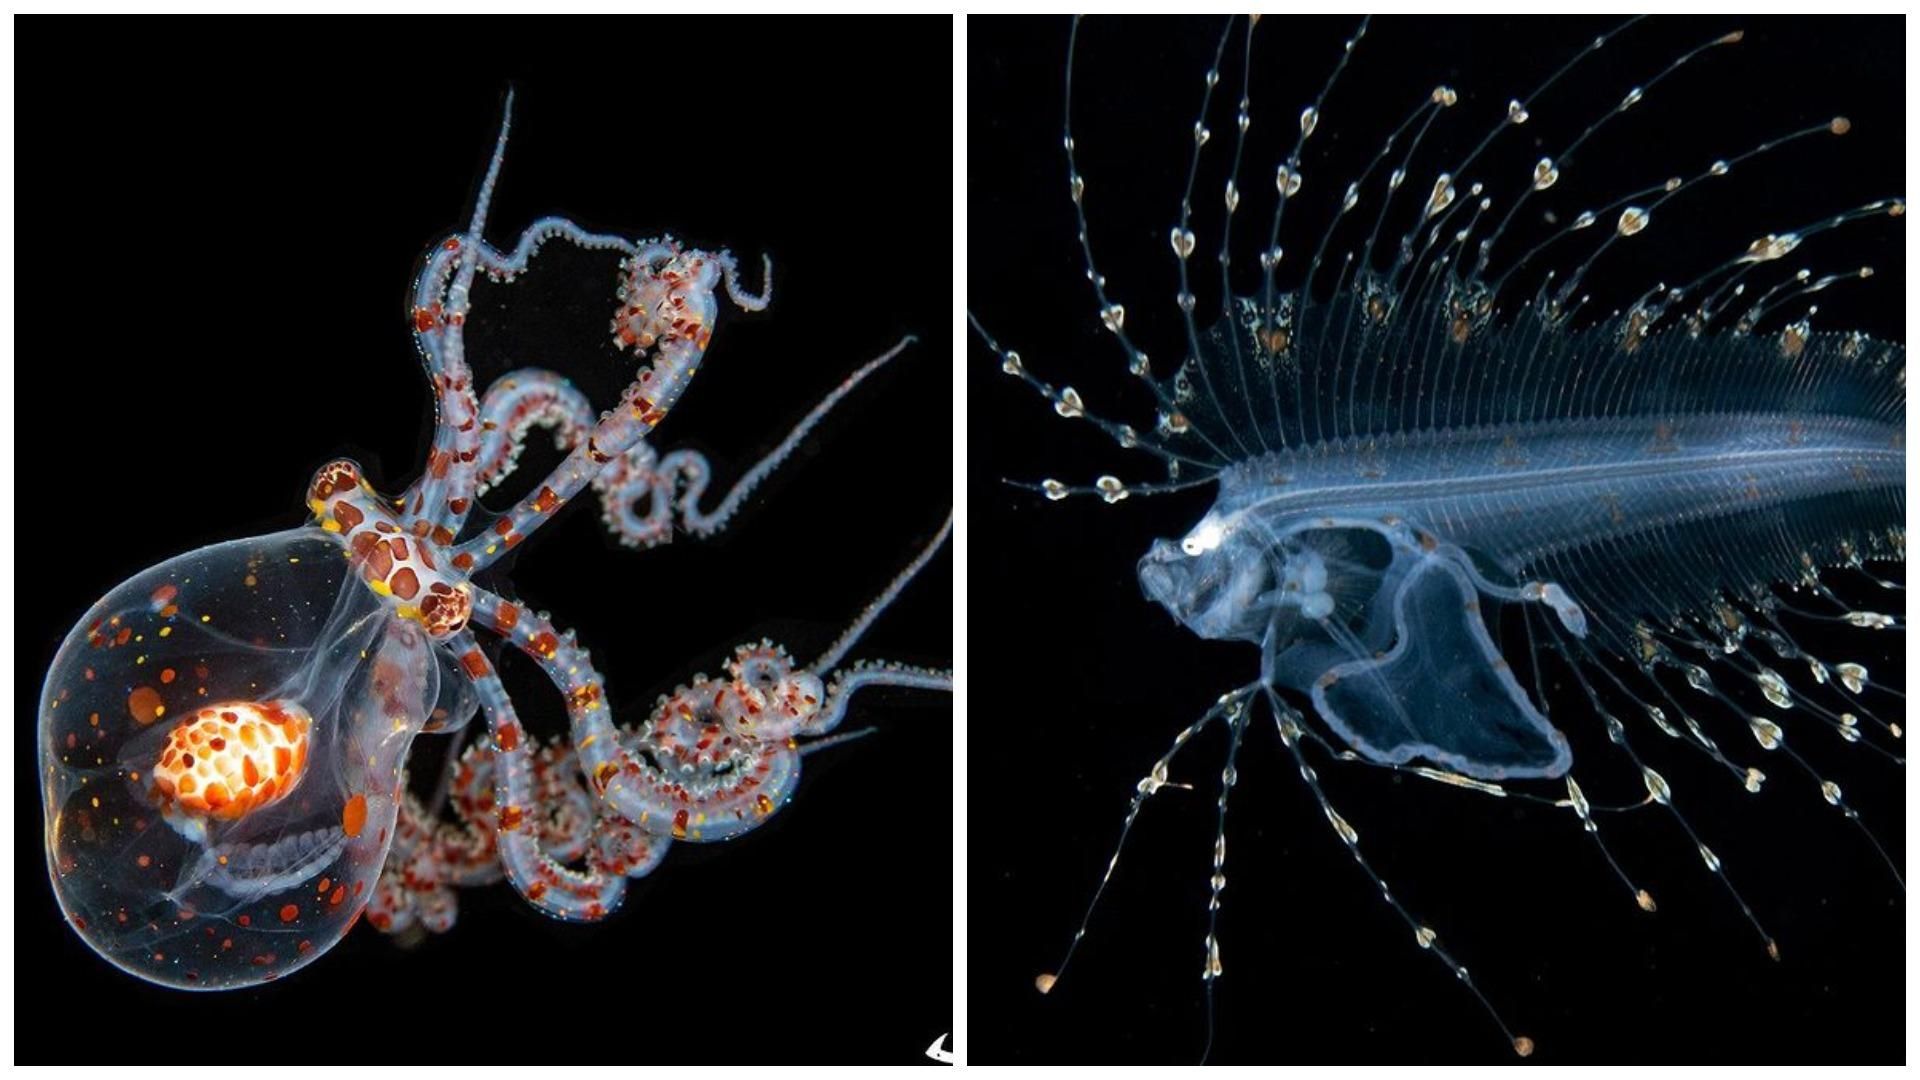 Дайвер фотографирует микроскопических обитателей морского дна: захватывающая коллекция